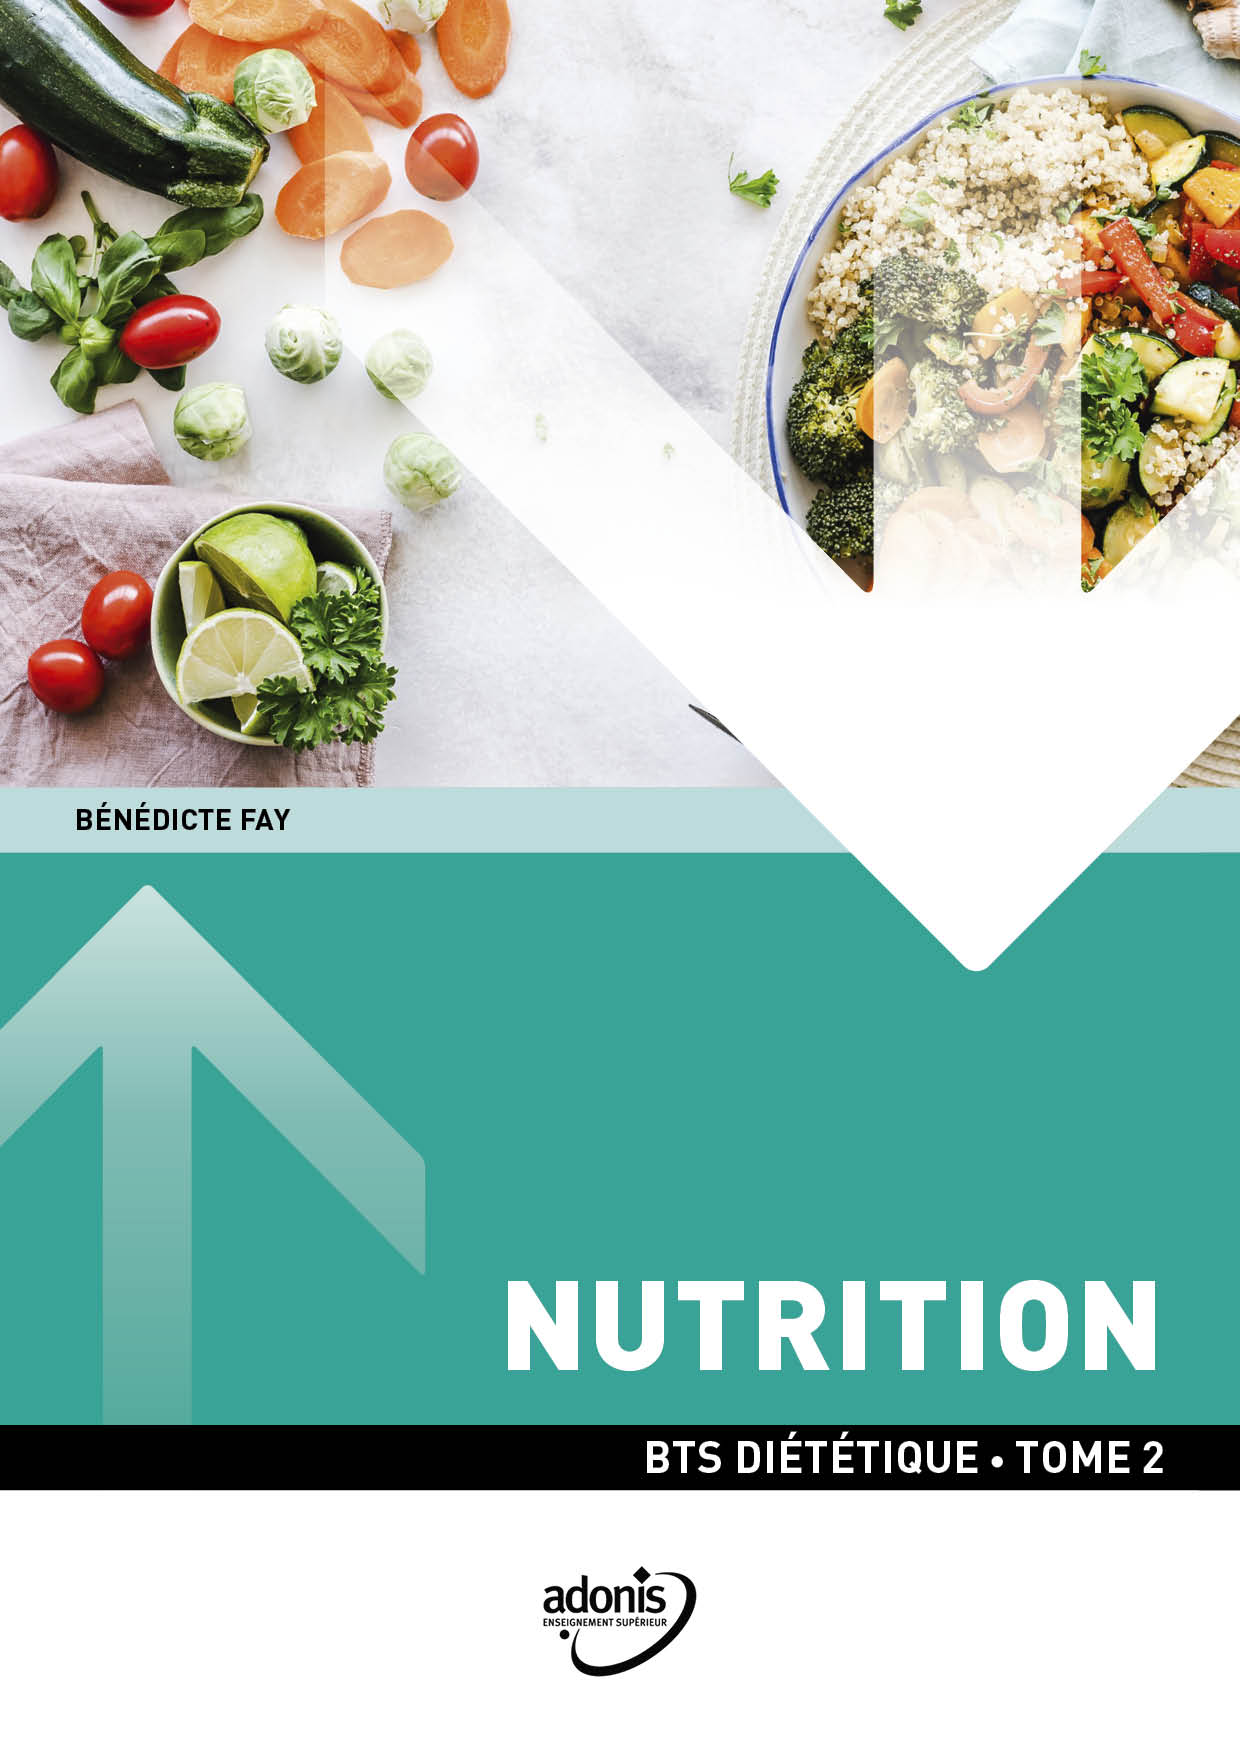 BTS DIÉTÉTIQUE - Nutrition Tome 2